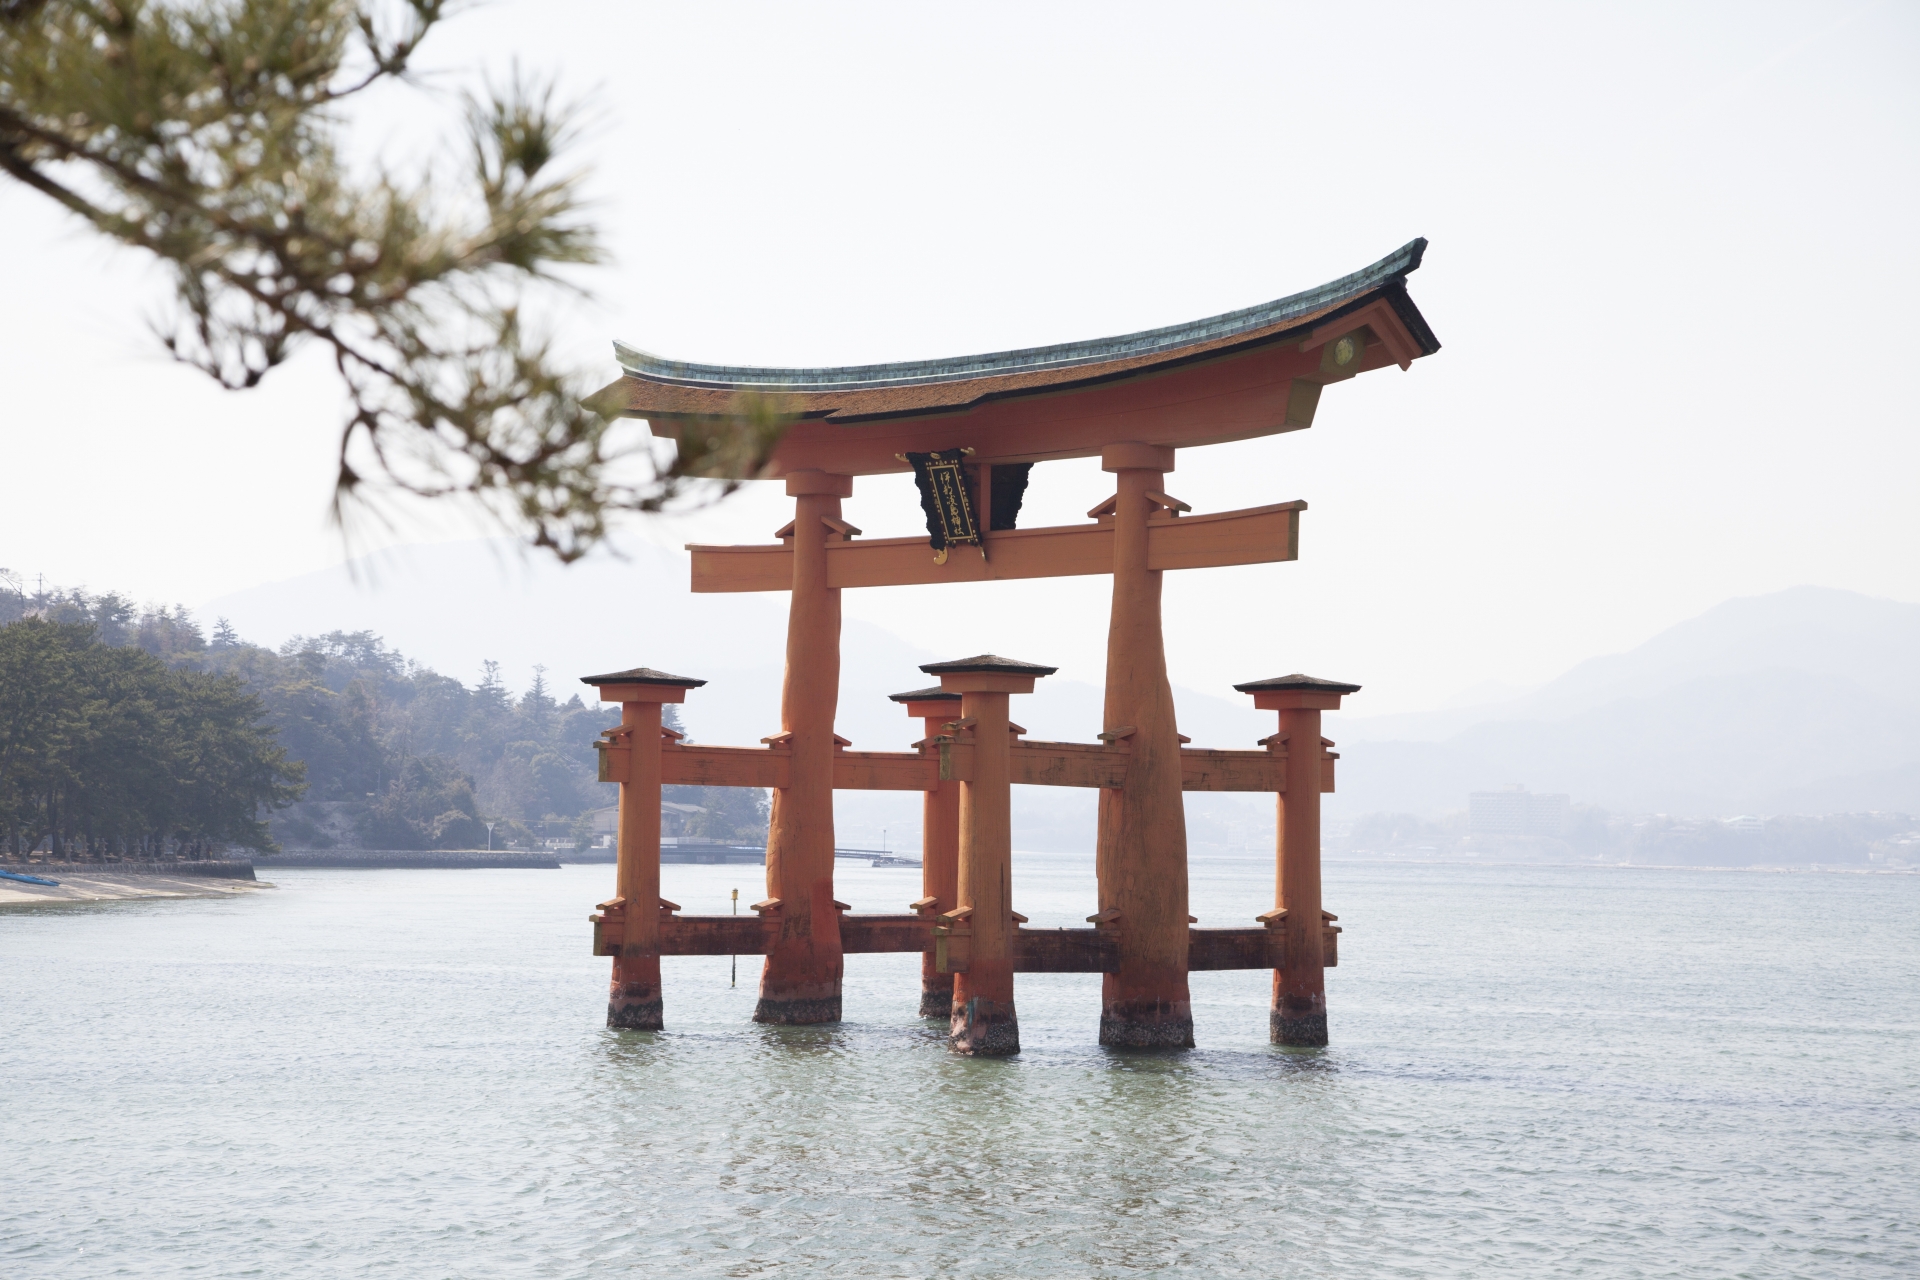 厳島神社の鳥居はなぜ腐らない、倒れない